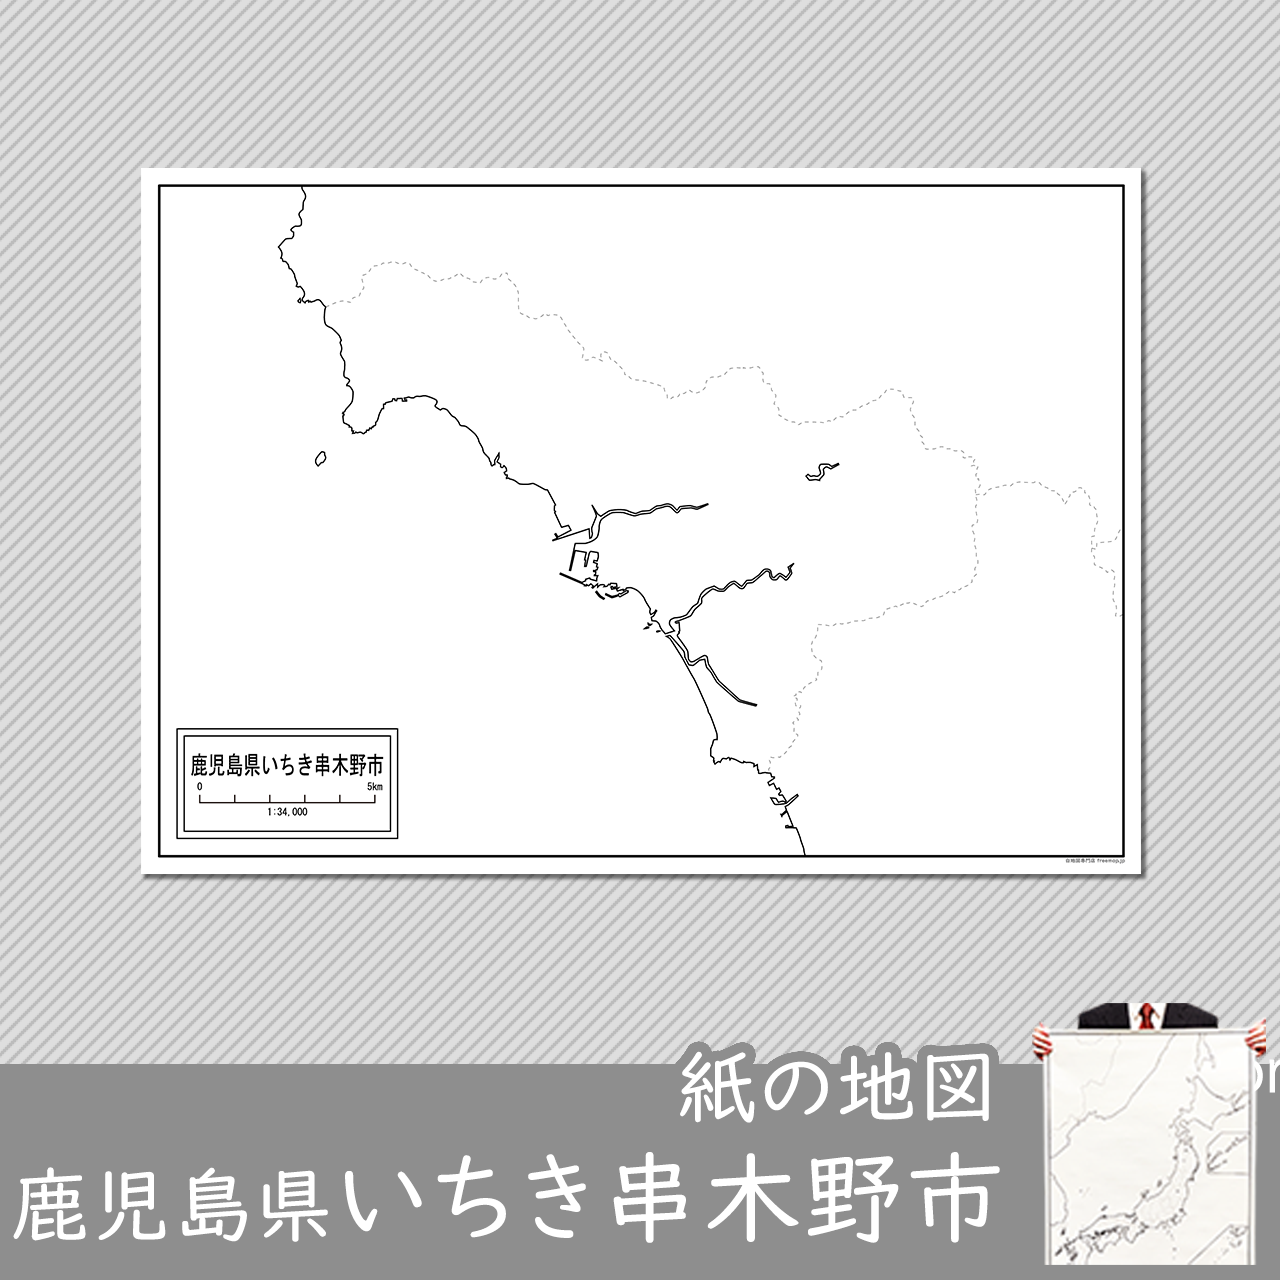 いちき串木野市の紙の白地図のサムネイル